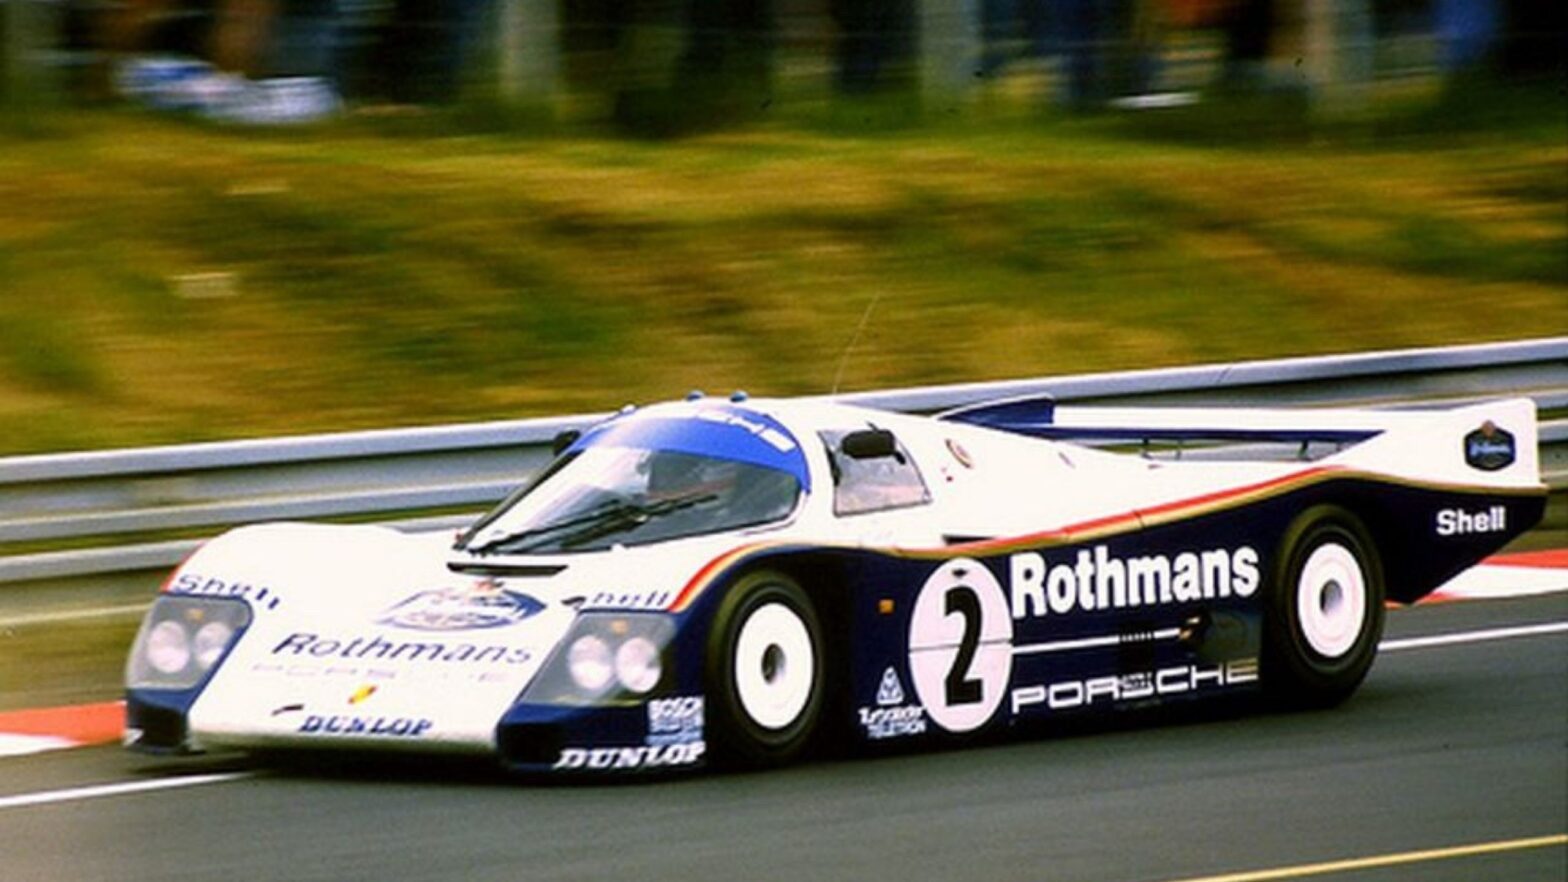 #2 Rothmans Porsche 962C during qualifying run